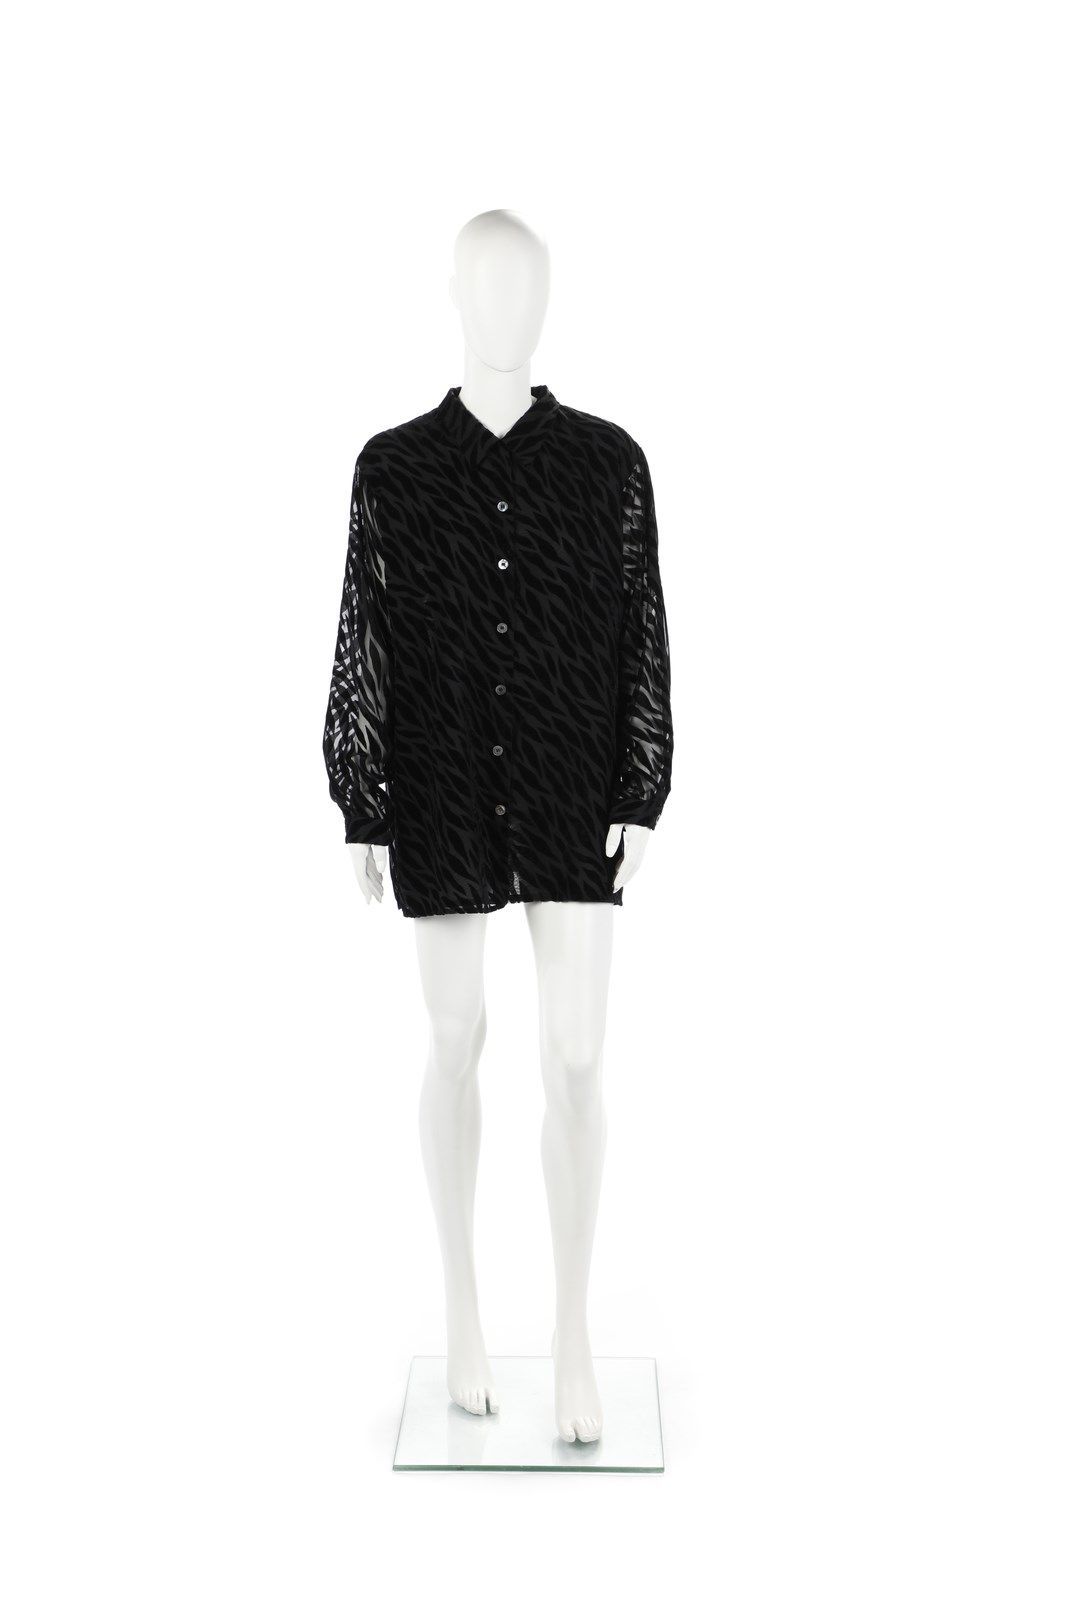 KRIZIA Black viscose blouse. Size 44. Krizia label - Made in Italy present. 90's&hellip;